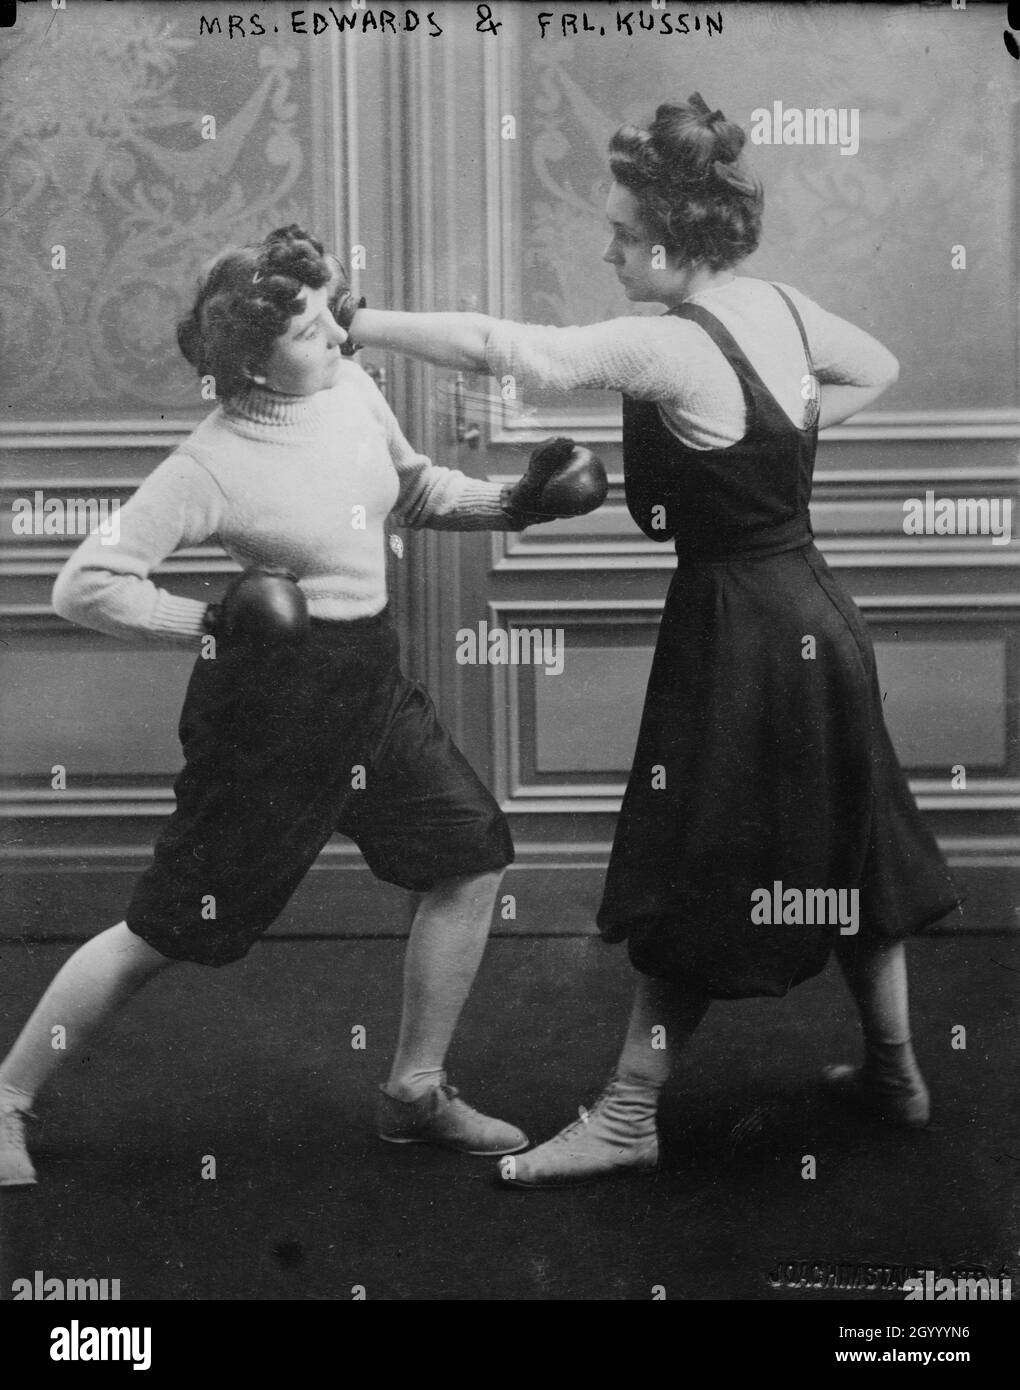 La photo montre Frauléin Kussin (à droite) et Mme Edwards (à gauche) qui ont eu un match de boxe le 7 mars 1912. Banque D'Images